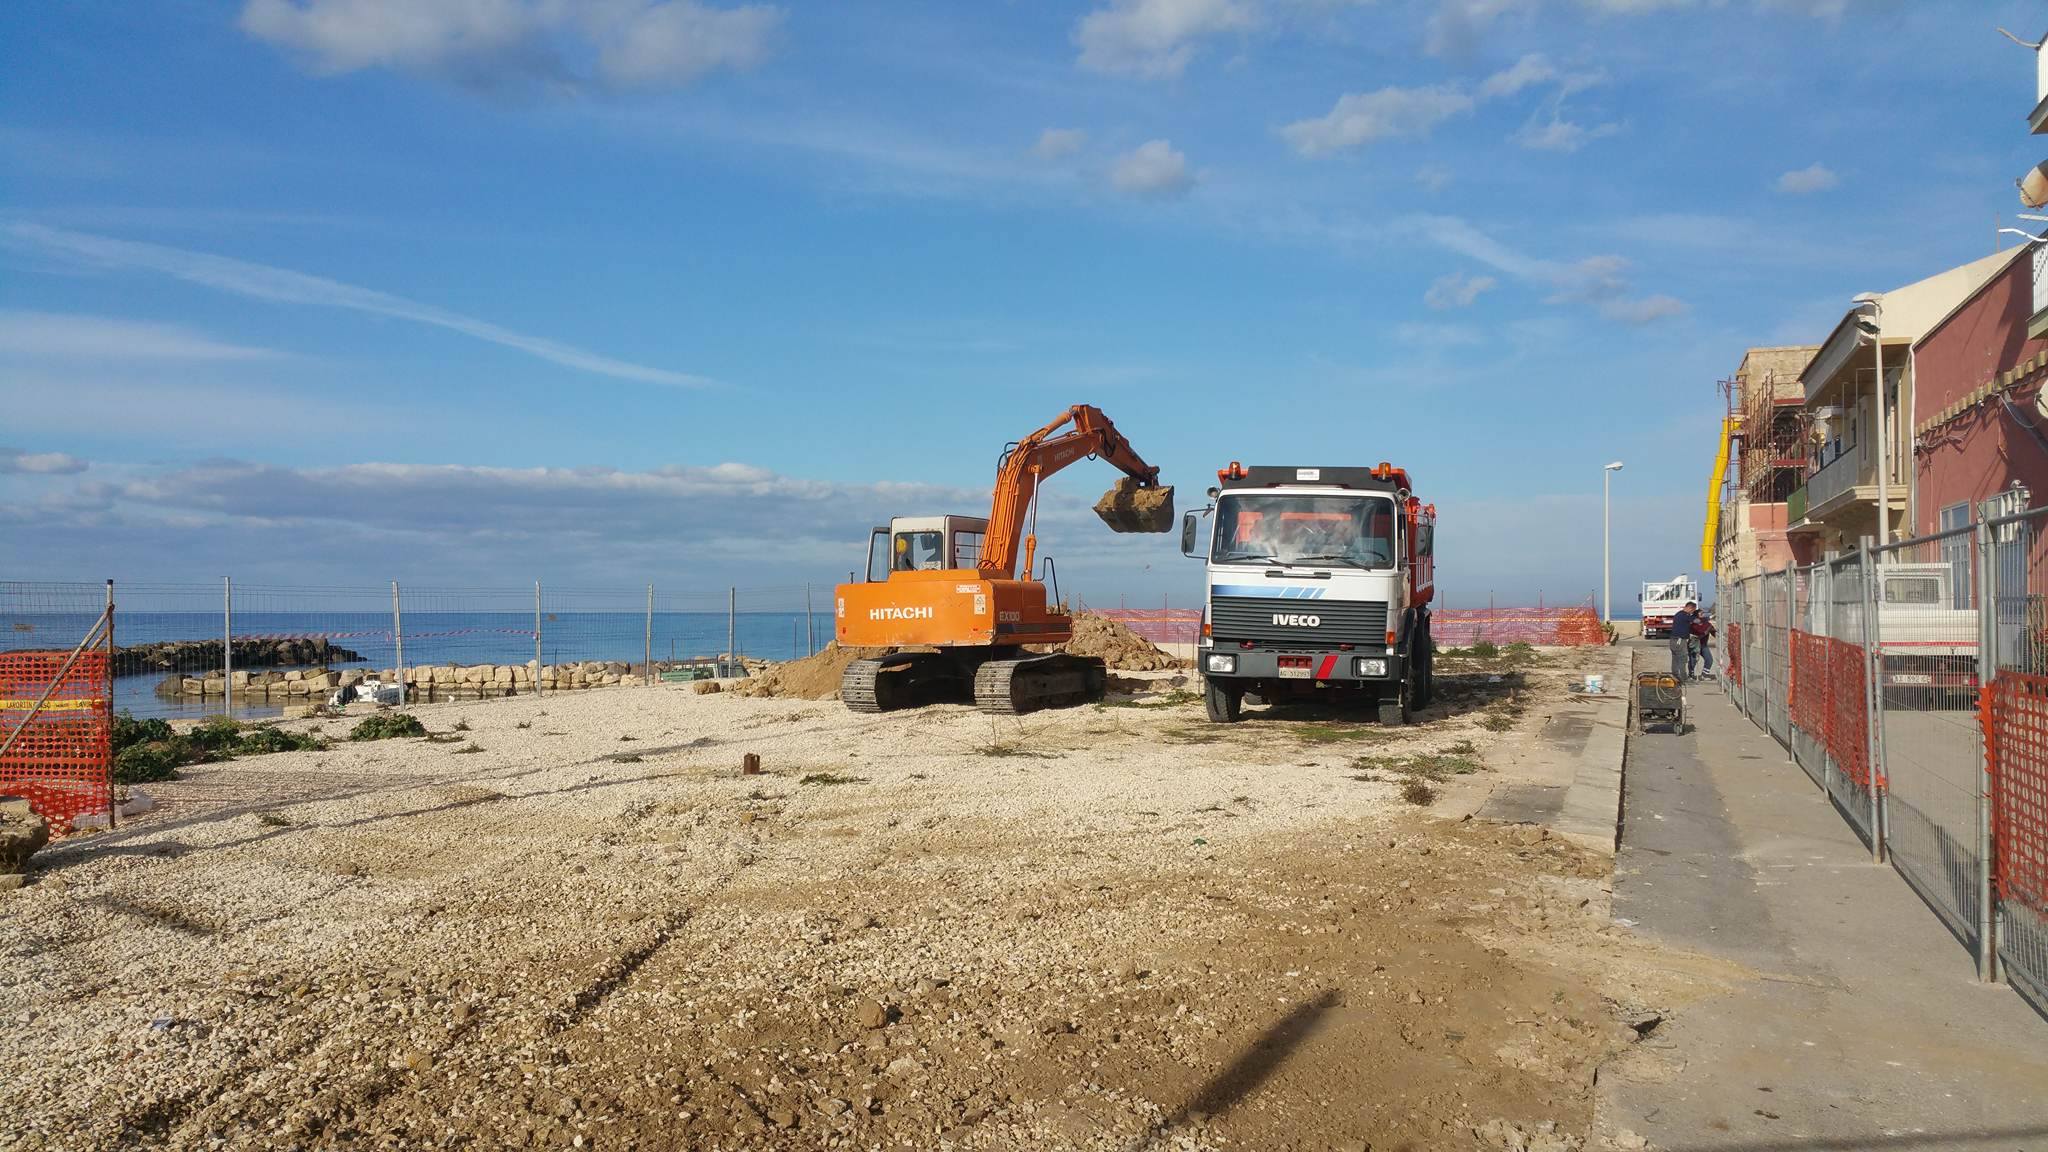  Punta Secca, riecco le ruspe: partono i lavori per il nuovo belvedere FOTO